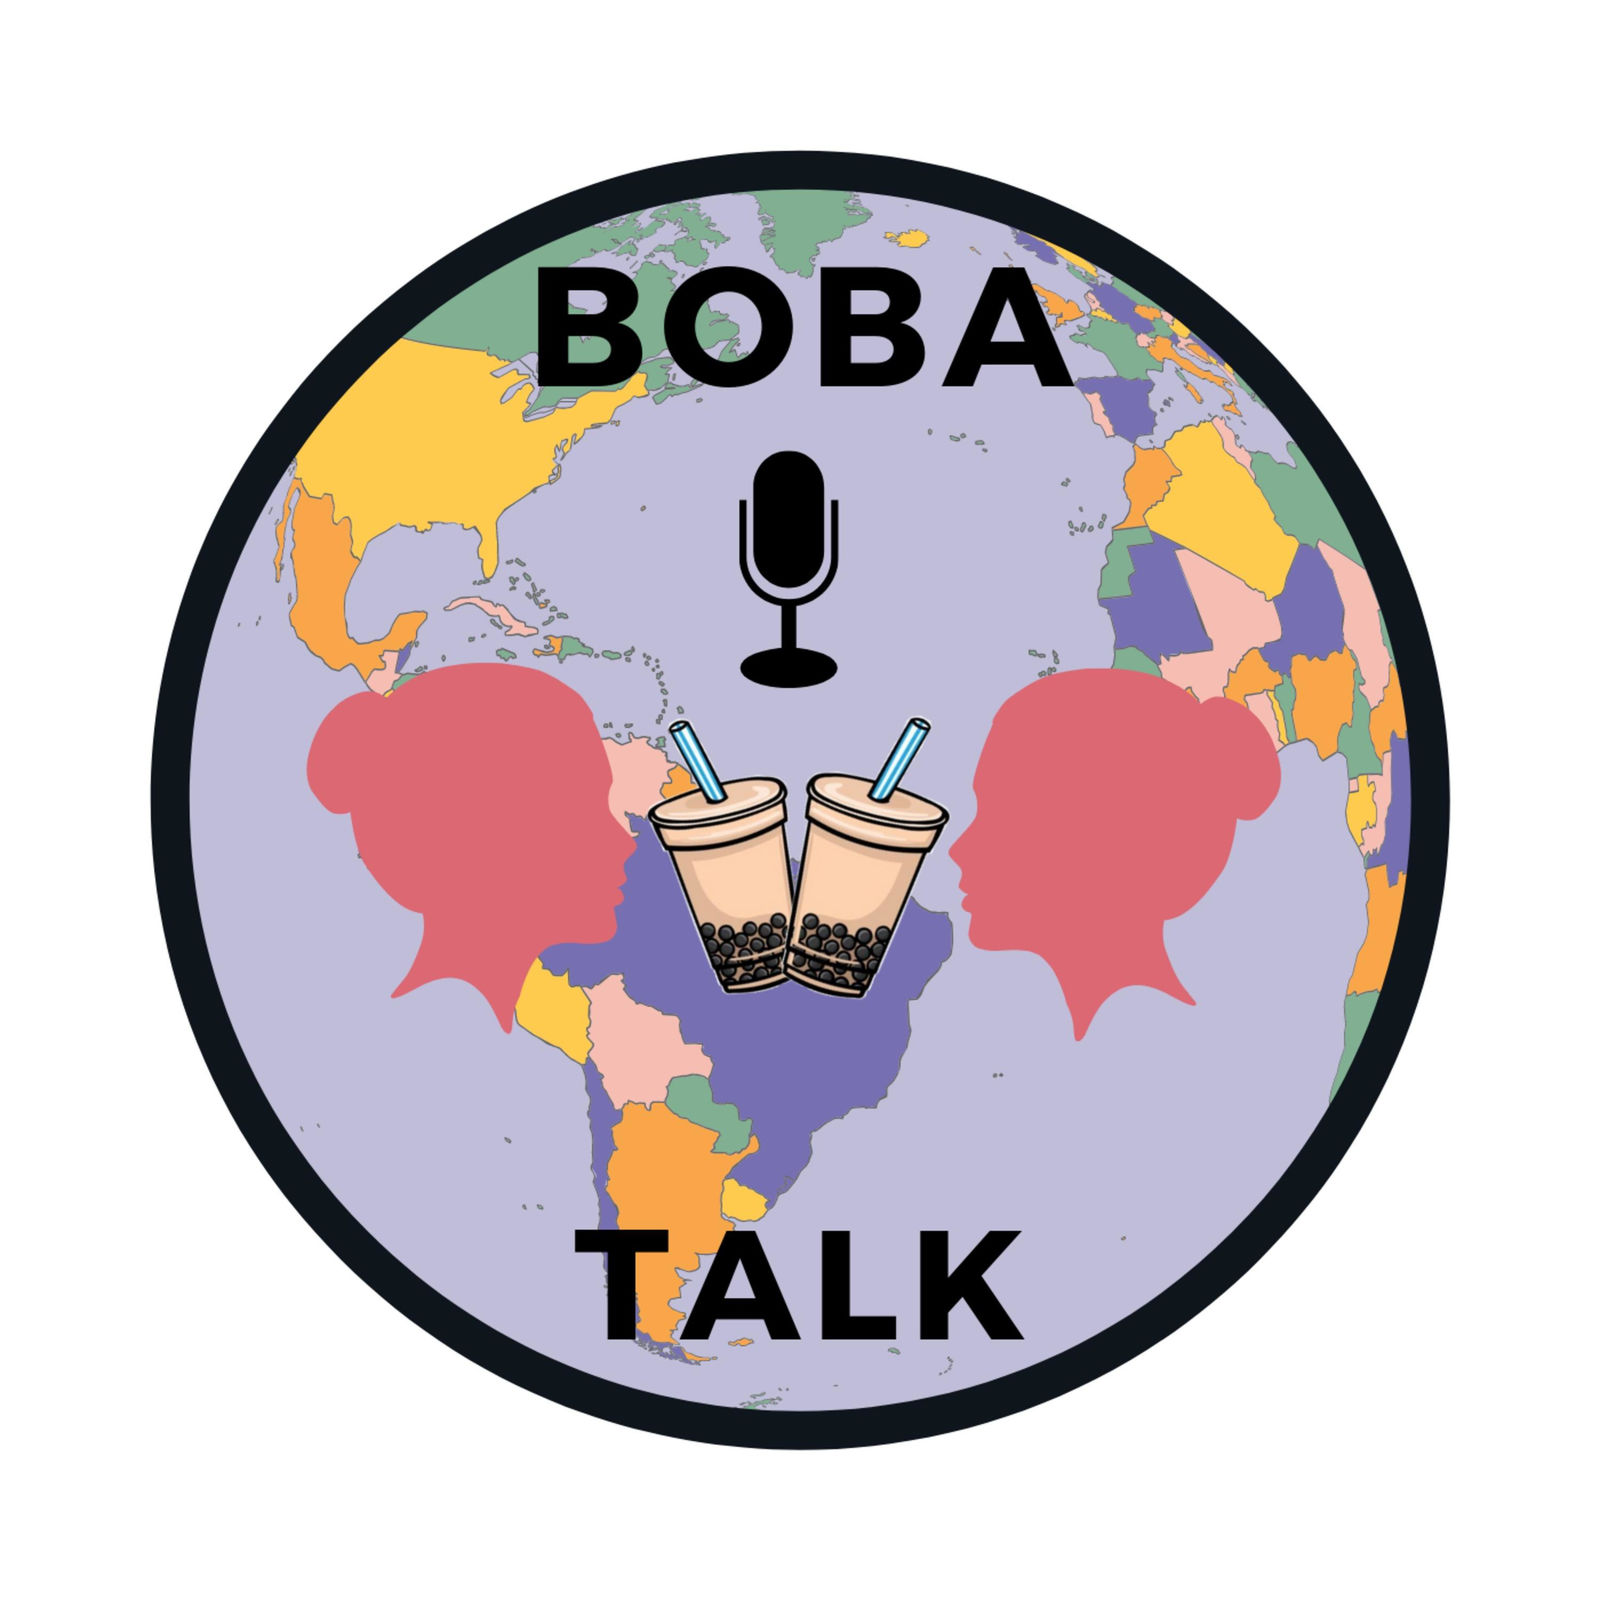 Boba Talk